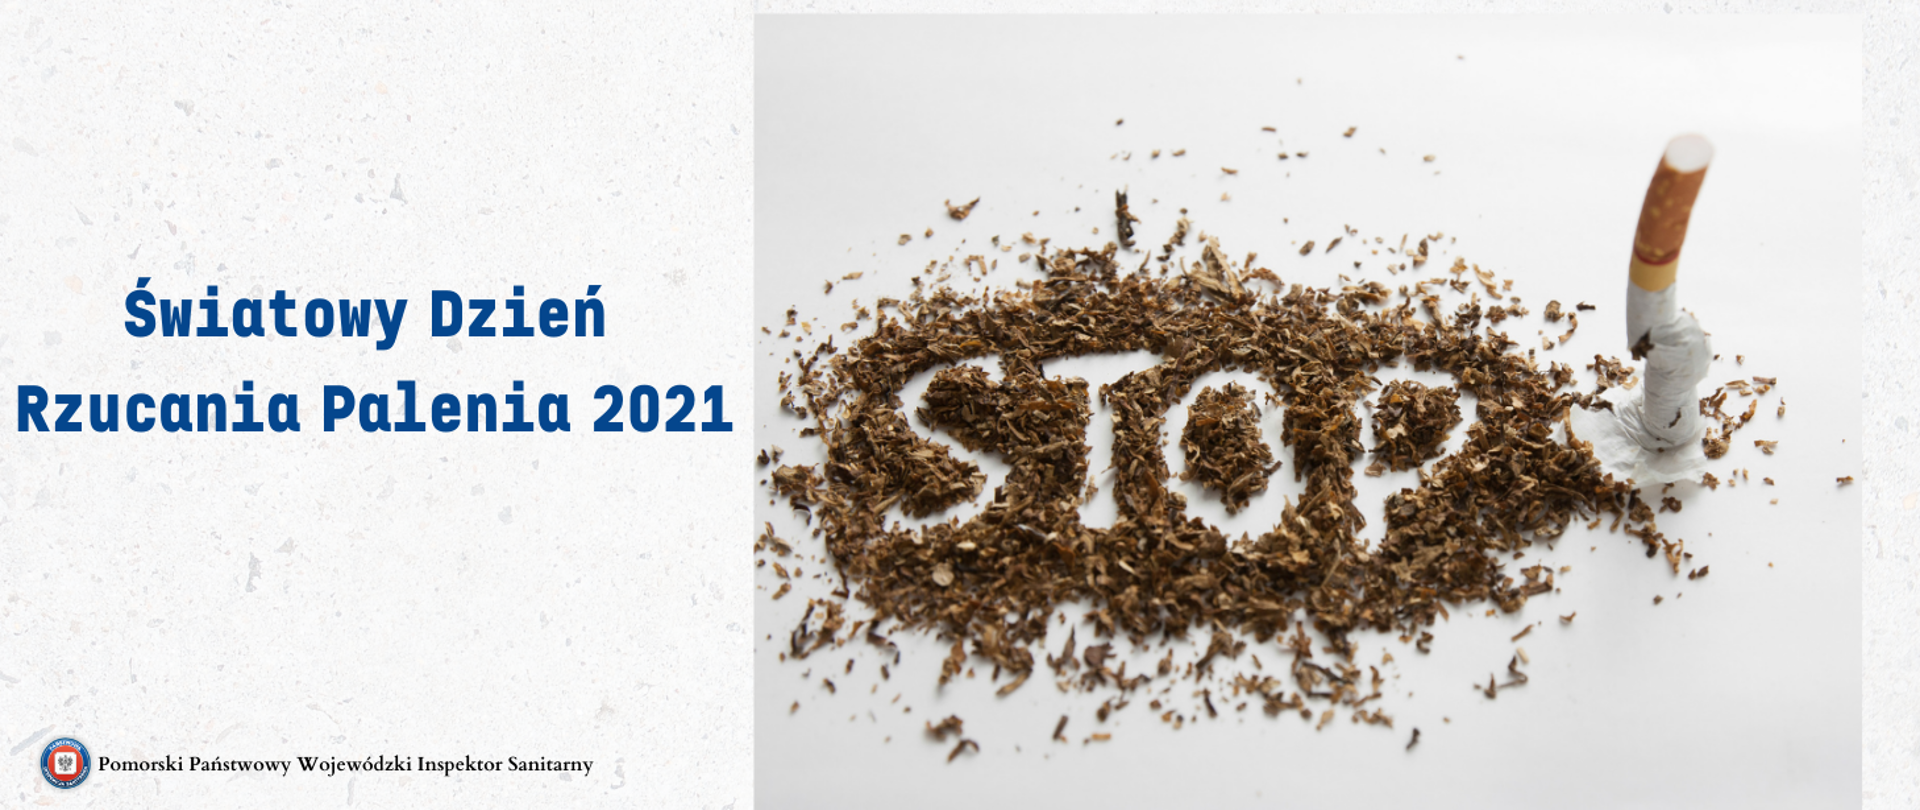 Światowy Dzień Rzucania Palenia 2021.png